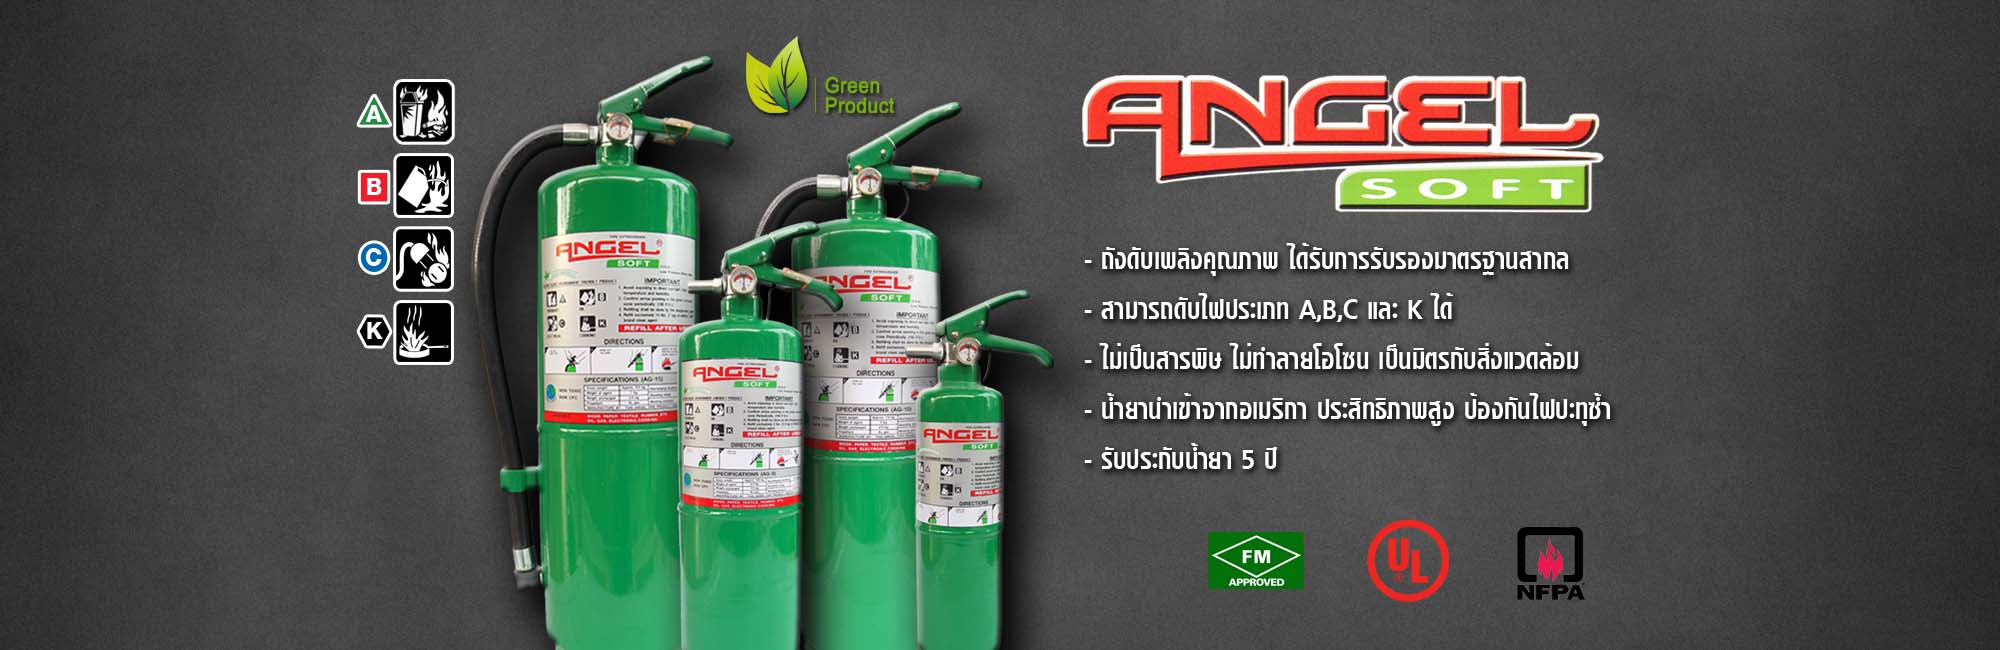 ถังดับเพลิง เชียงใหม่ NON CFC สารสะอาด สีเขียว Angel Soft